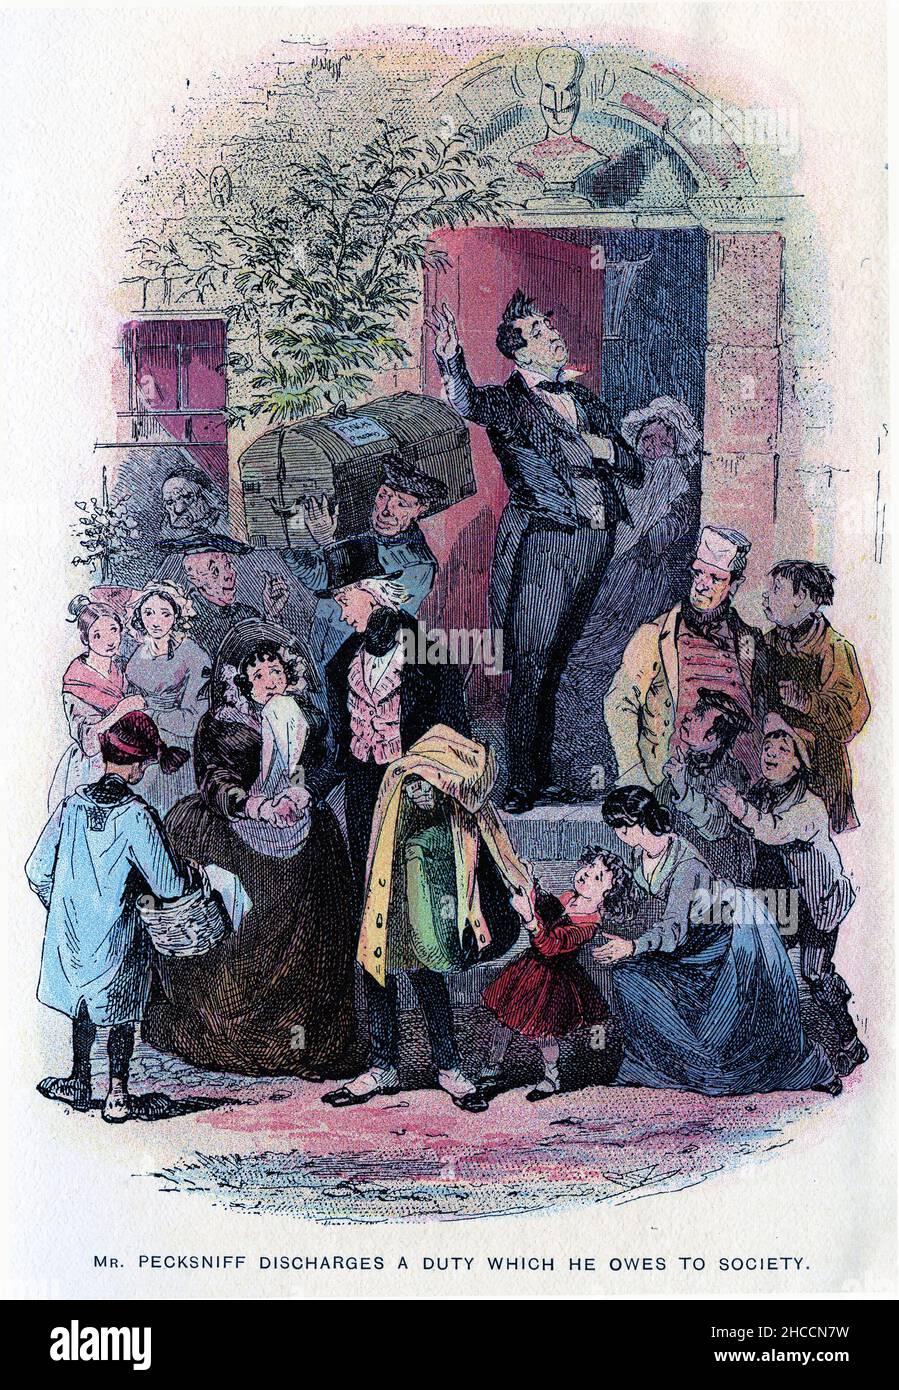 Stich von Herrn Pecksniff, der eine Pflicht zur Gesellschaft erlässt, eine Szene aus einem viktorianischen Buch von Charles Dickens, veröffentlicht um 1908 Stockfoto